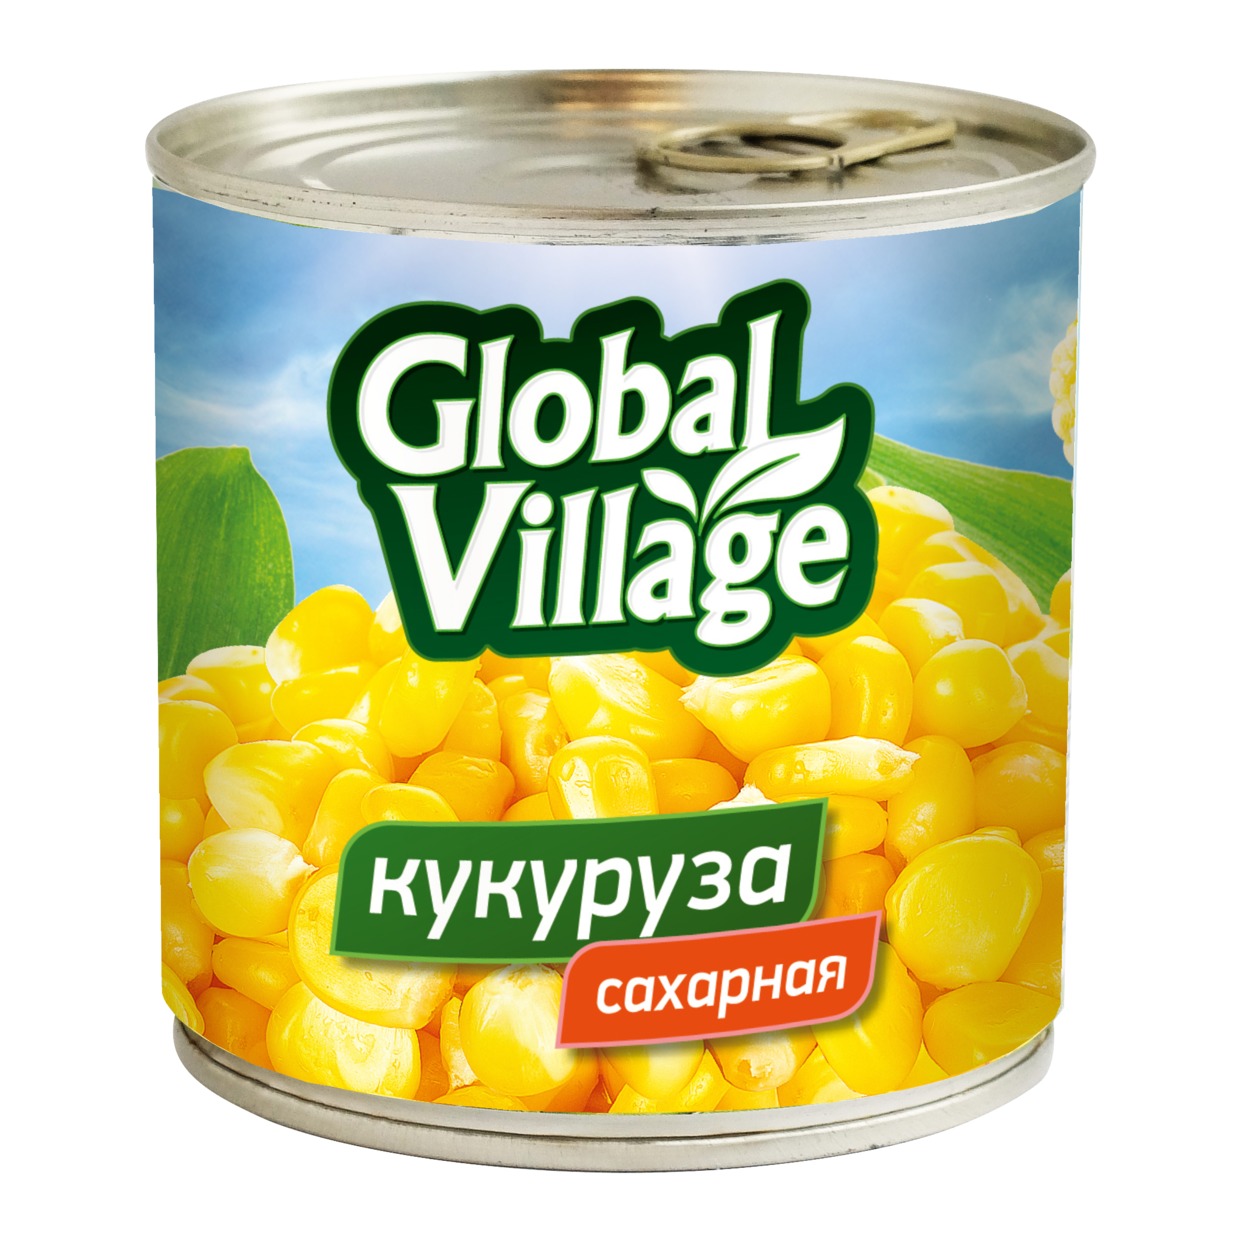 GL.VILLAGE Кукуруза сахарная ж/б 340г по акции в Пятерочке